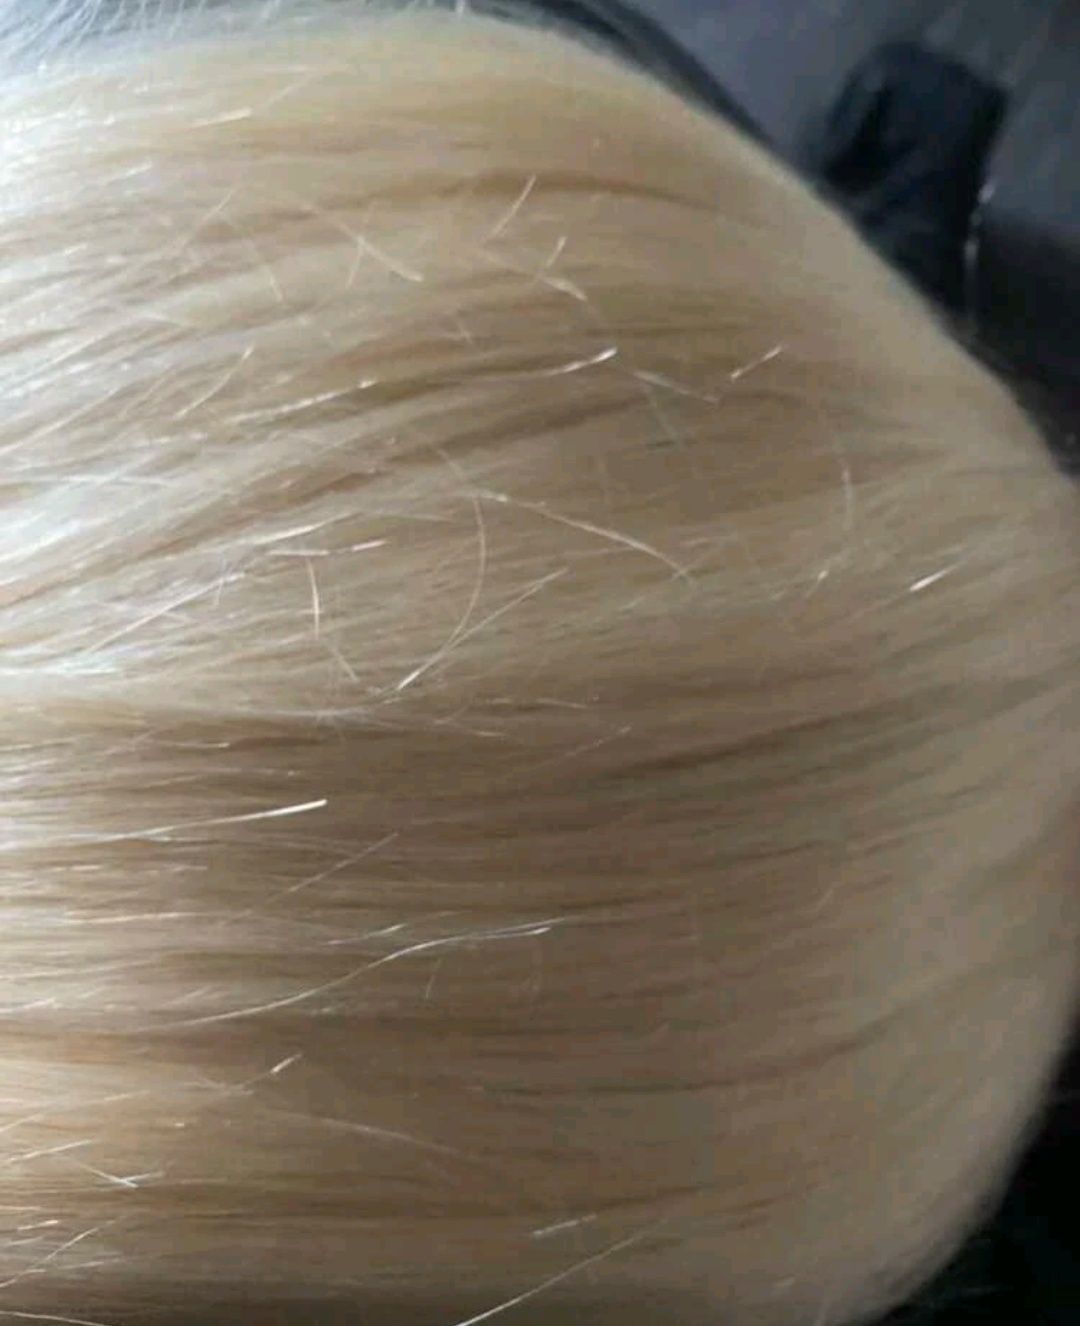 Włosy blond naturalne 150g.55cm długie